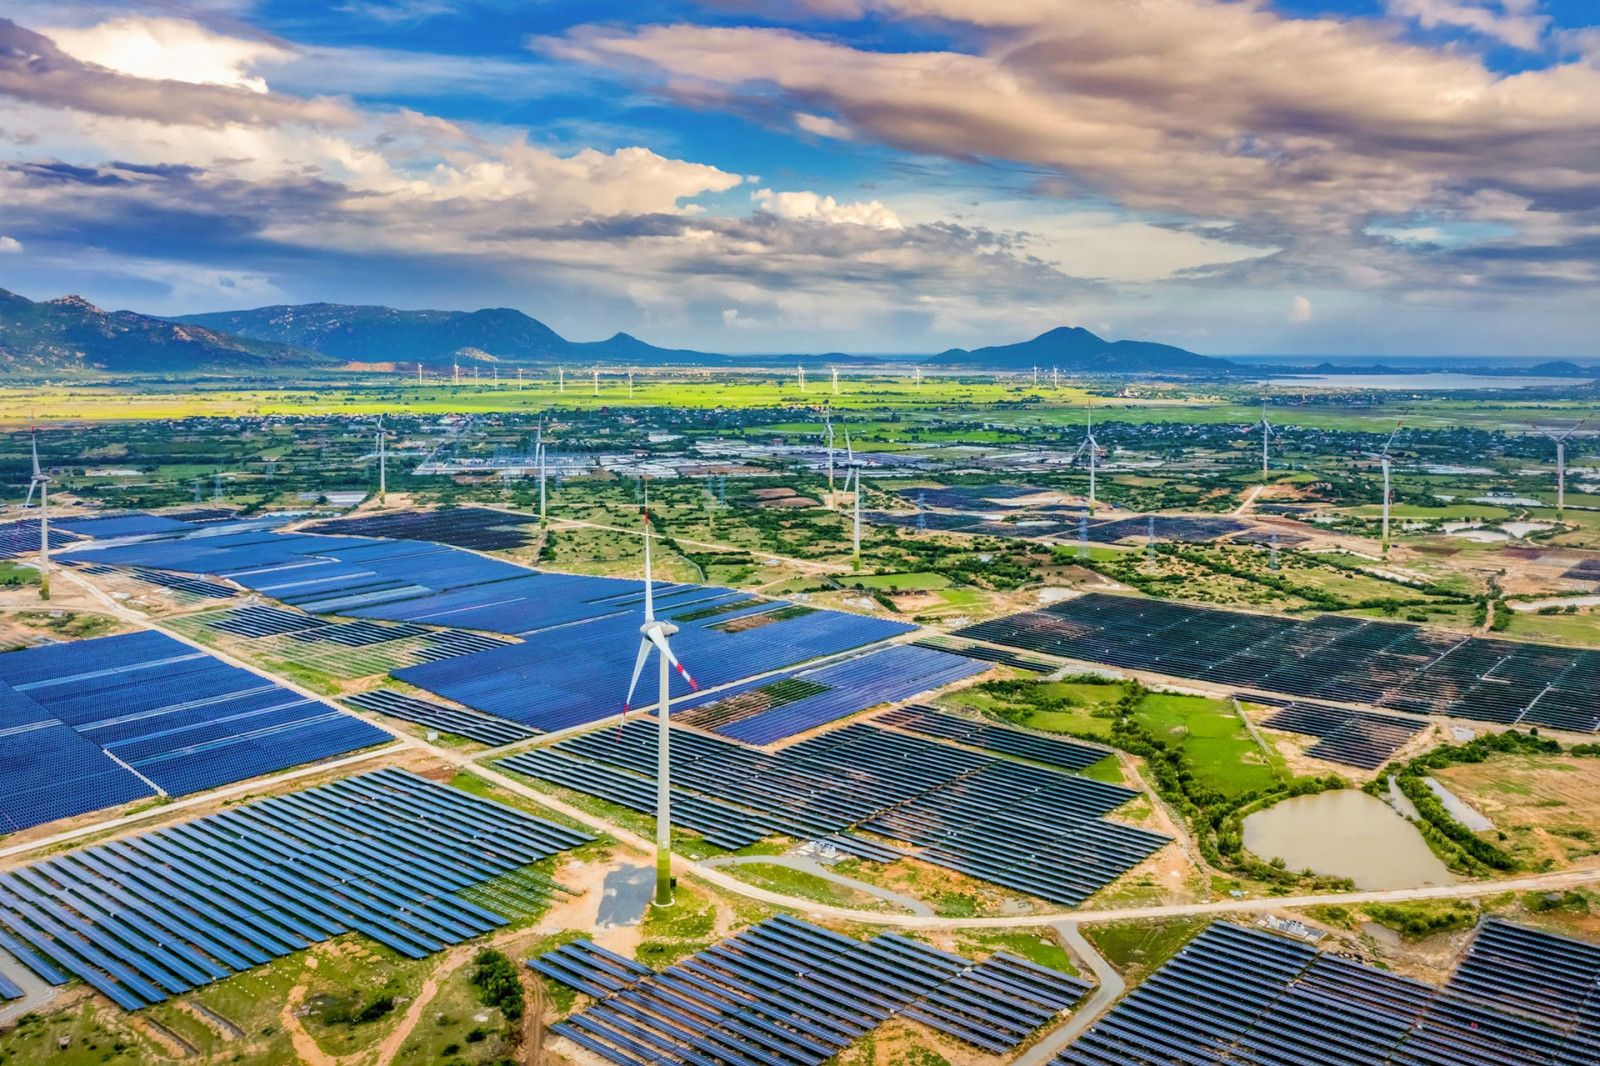 Khai thác nguồn năng lượng tái tạo đã và đang là xu hướng chung trên thế giới